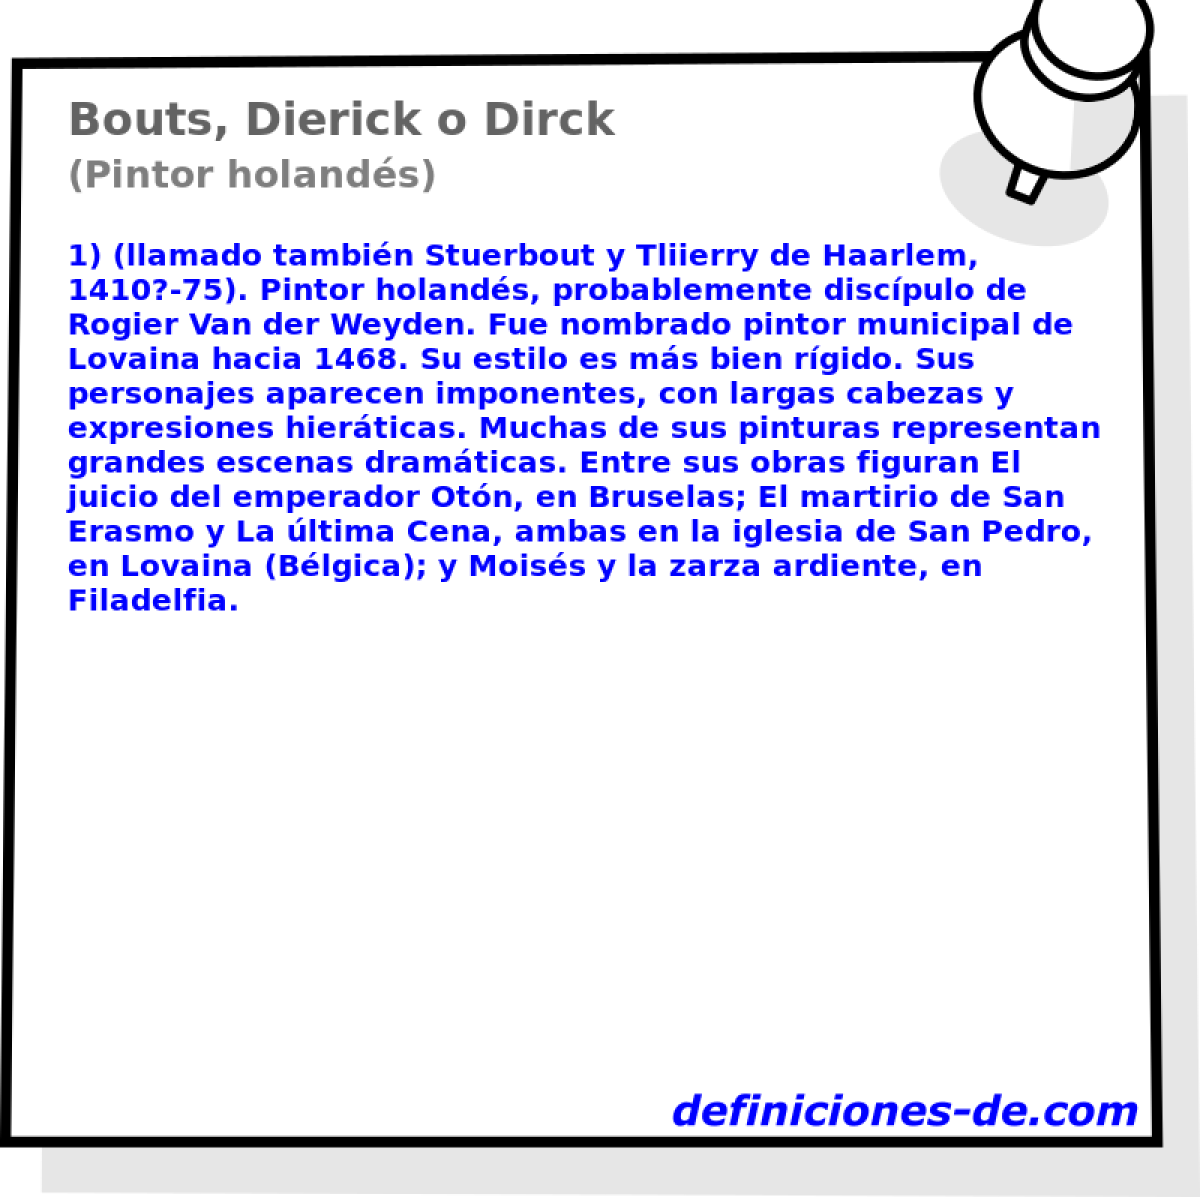 Bouts, Dierick o Dirck (Pintor holands)